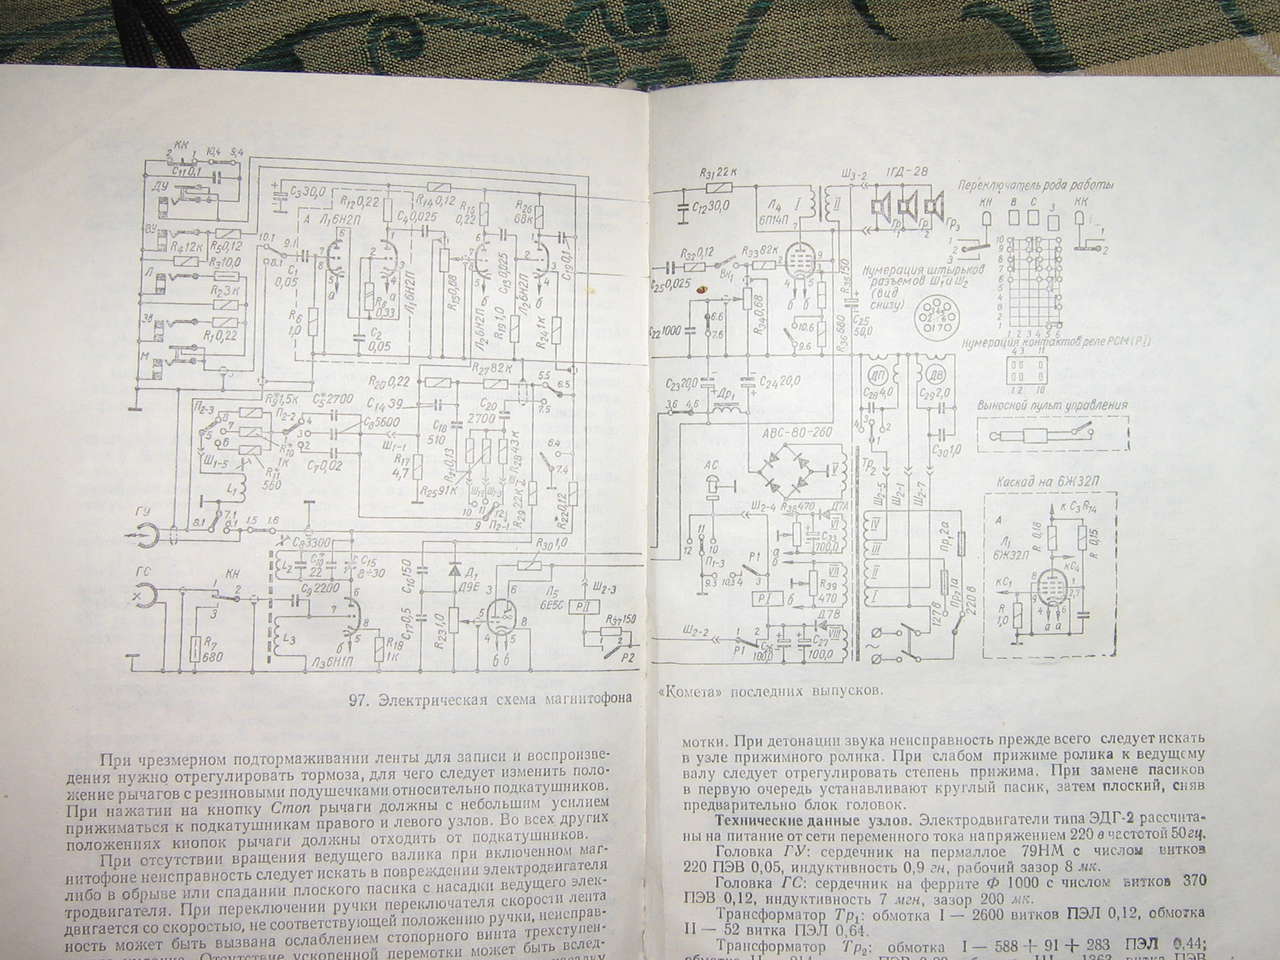  Схема магнитофона магнитолы Рекорд, Фиалка и т.п.